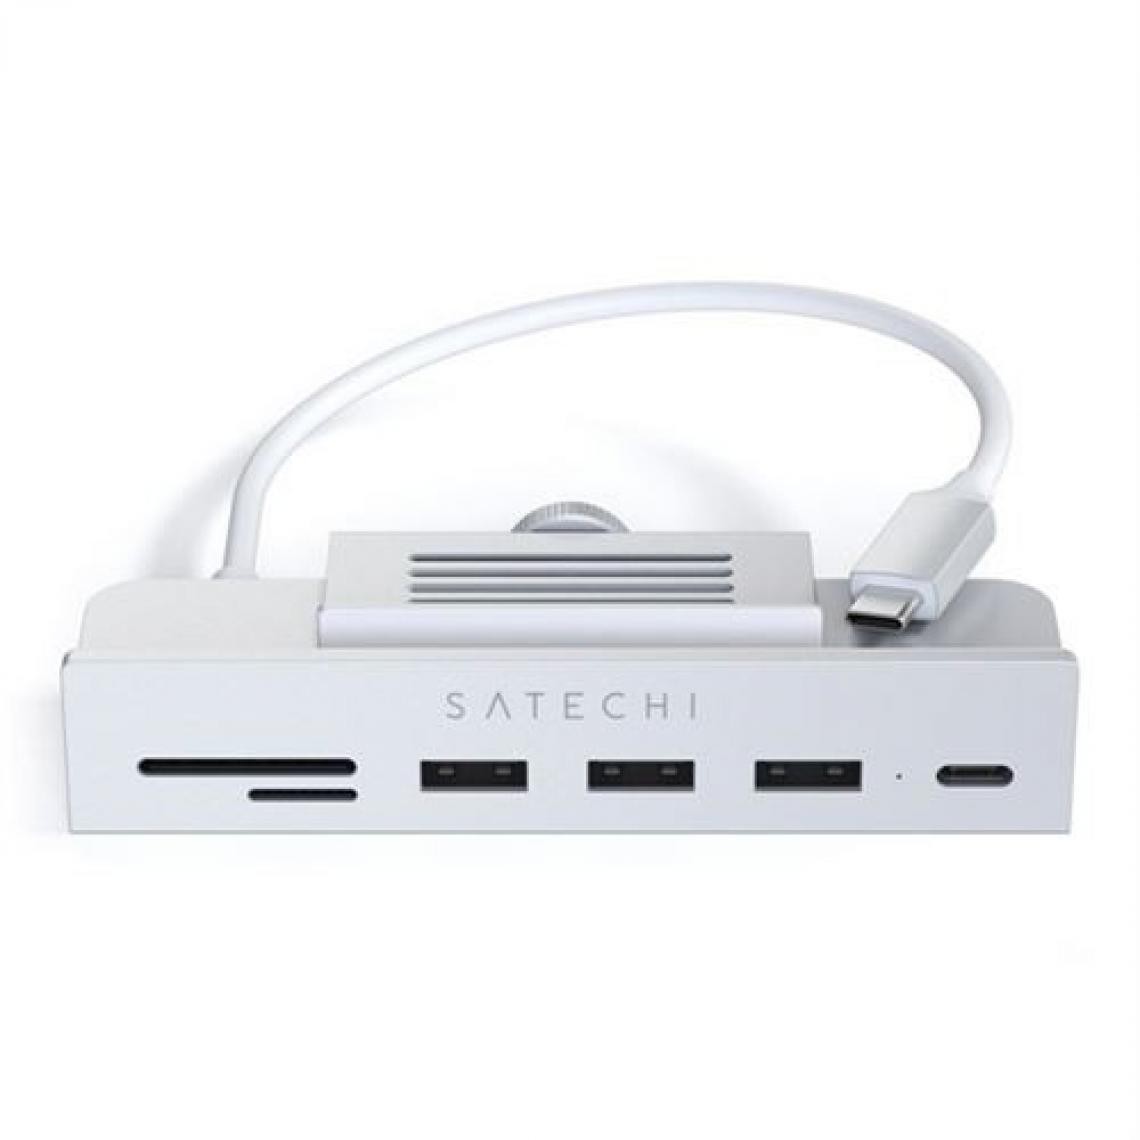 Satechi - HUB USB Type C 6 en 1 Satechi ST UCICHS Clamp pour iMac 24 2021 Argent - Hub